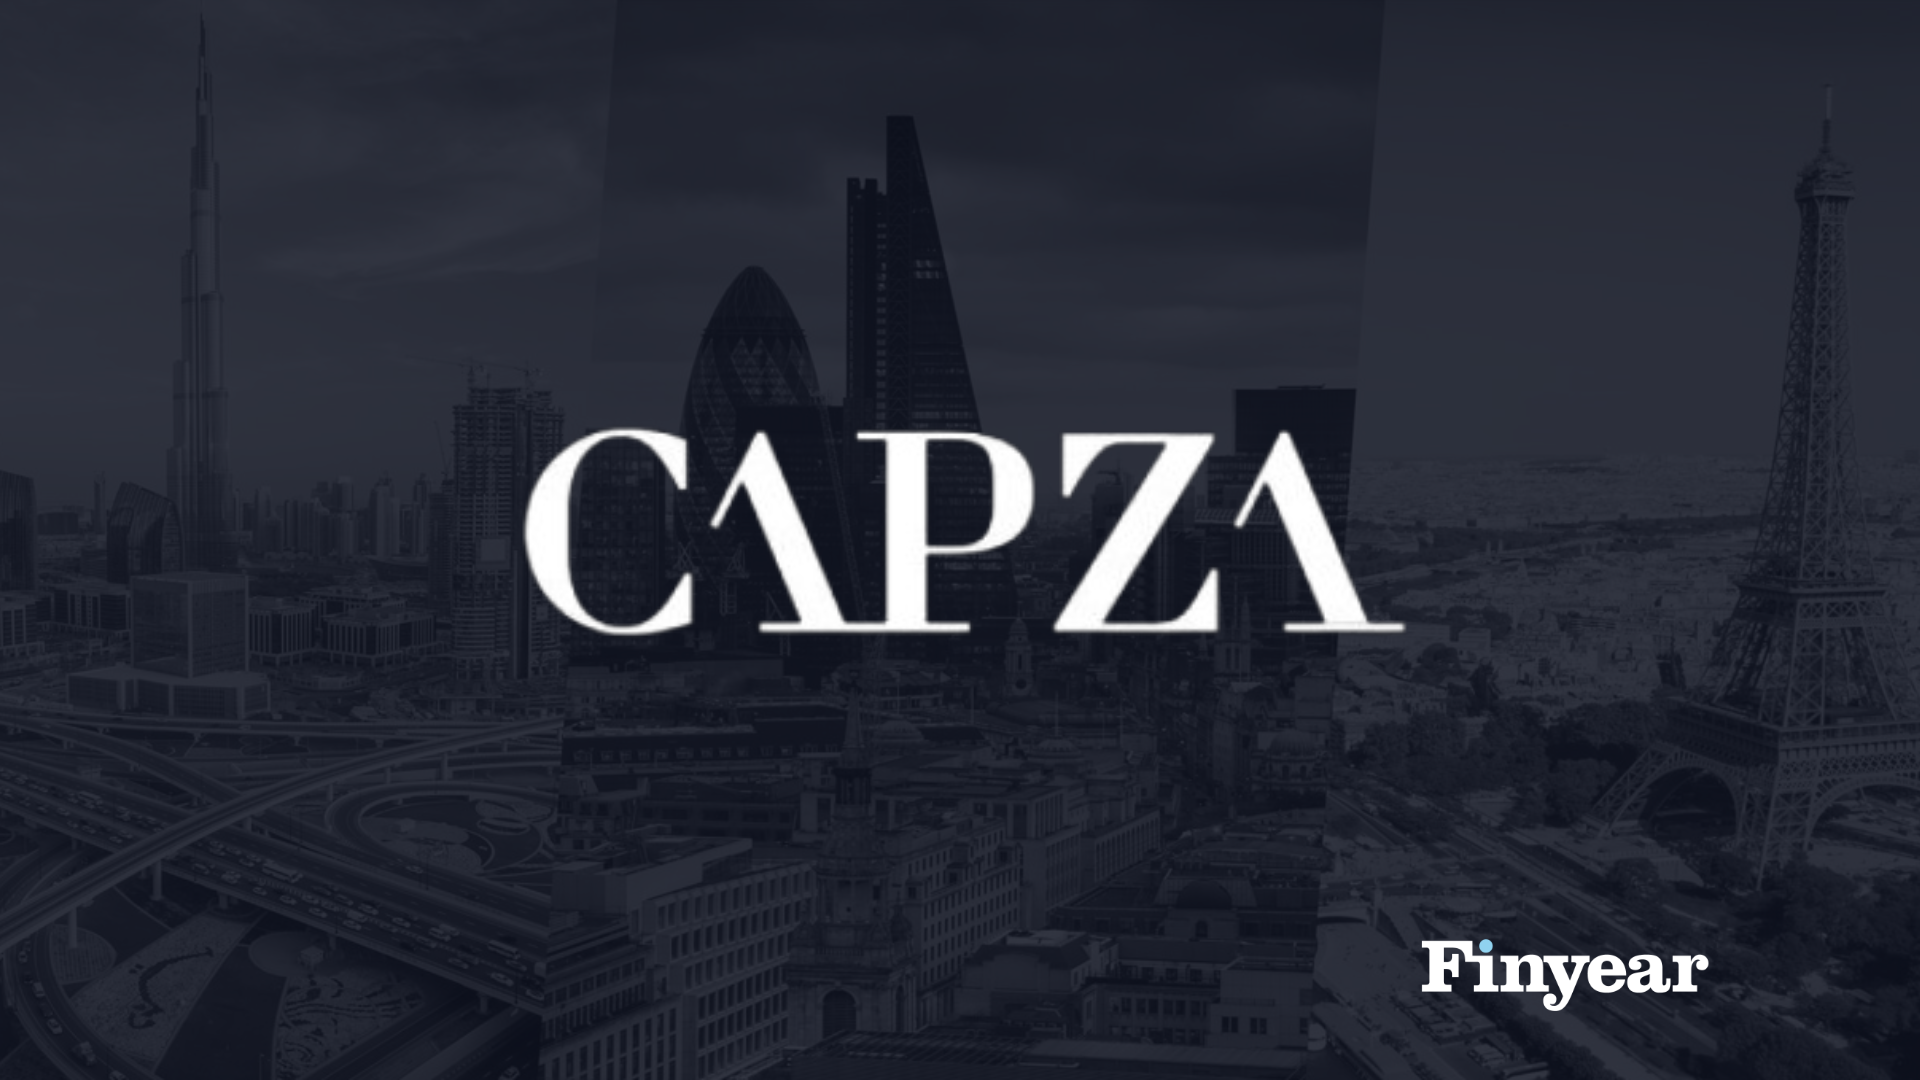 Capza : finalise la levée de son Fonds CAPZA 6 Private Debt Corporate à 2,5 milliards d'euros